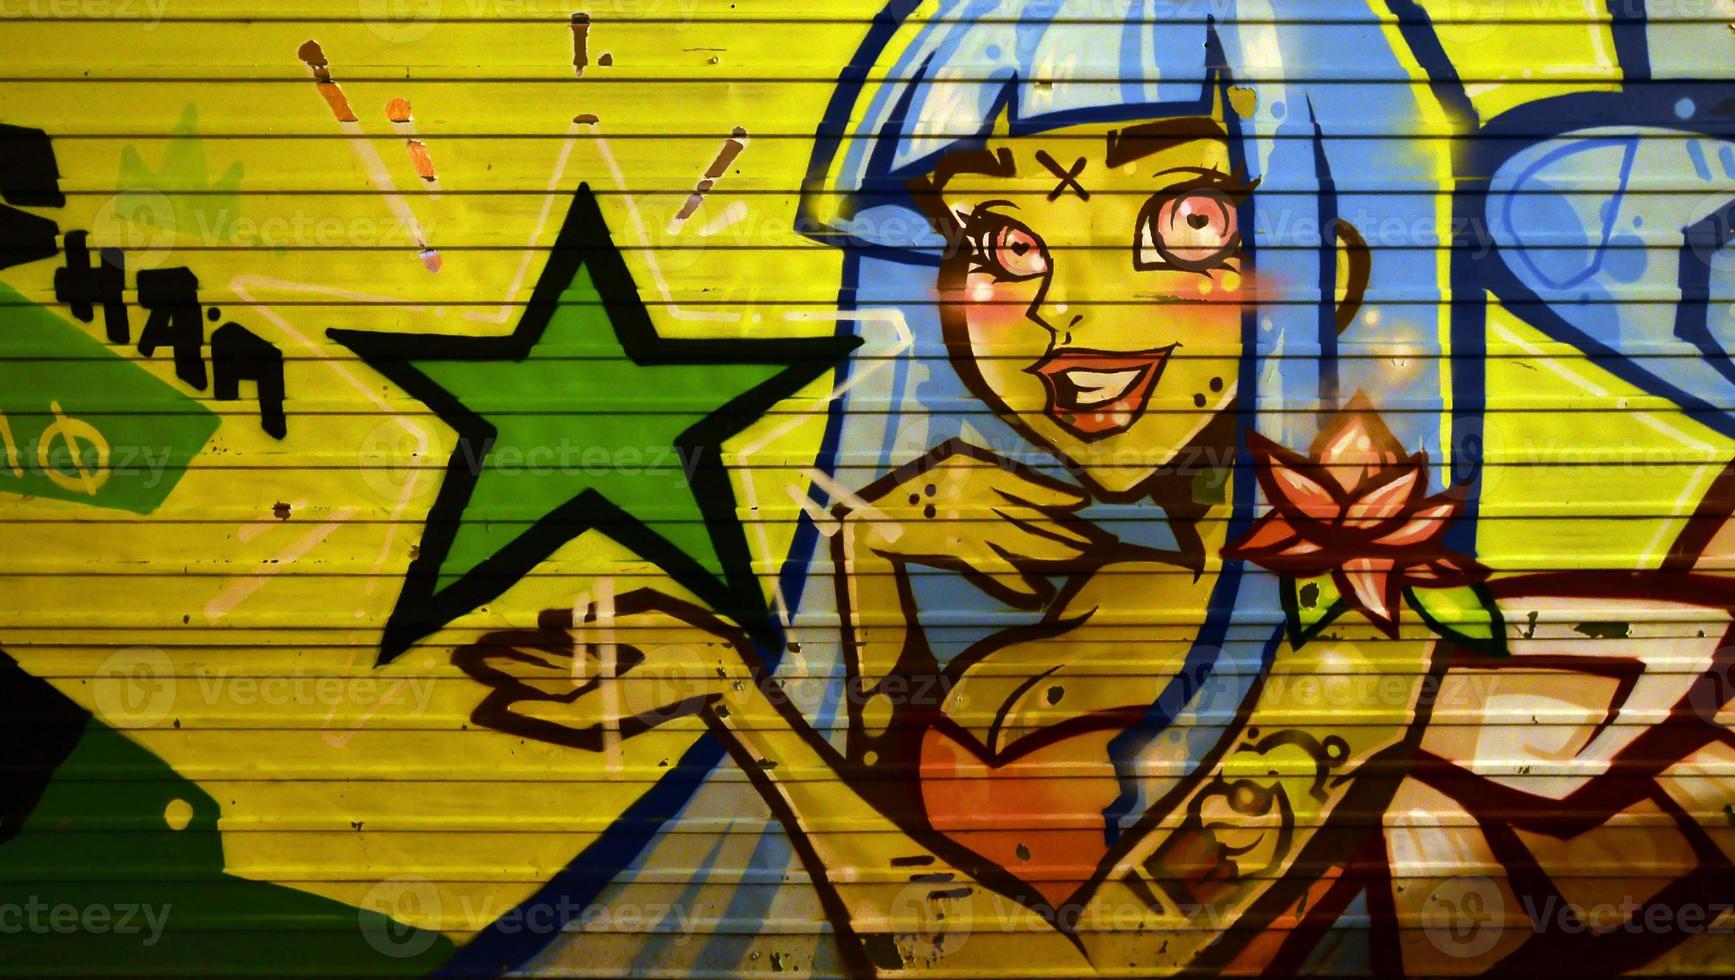 de structuur van de muur, versierd in graffiti tekening met de beeld van een mooi meisje met blauw haar- foto